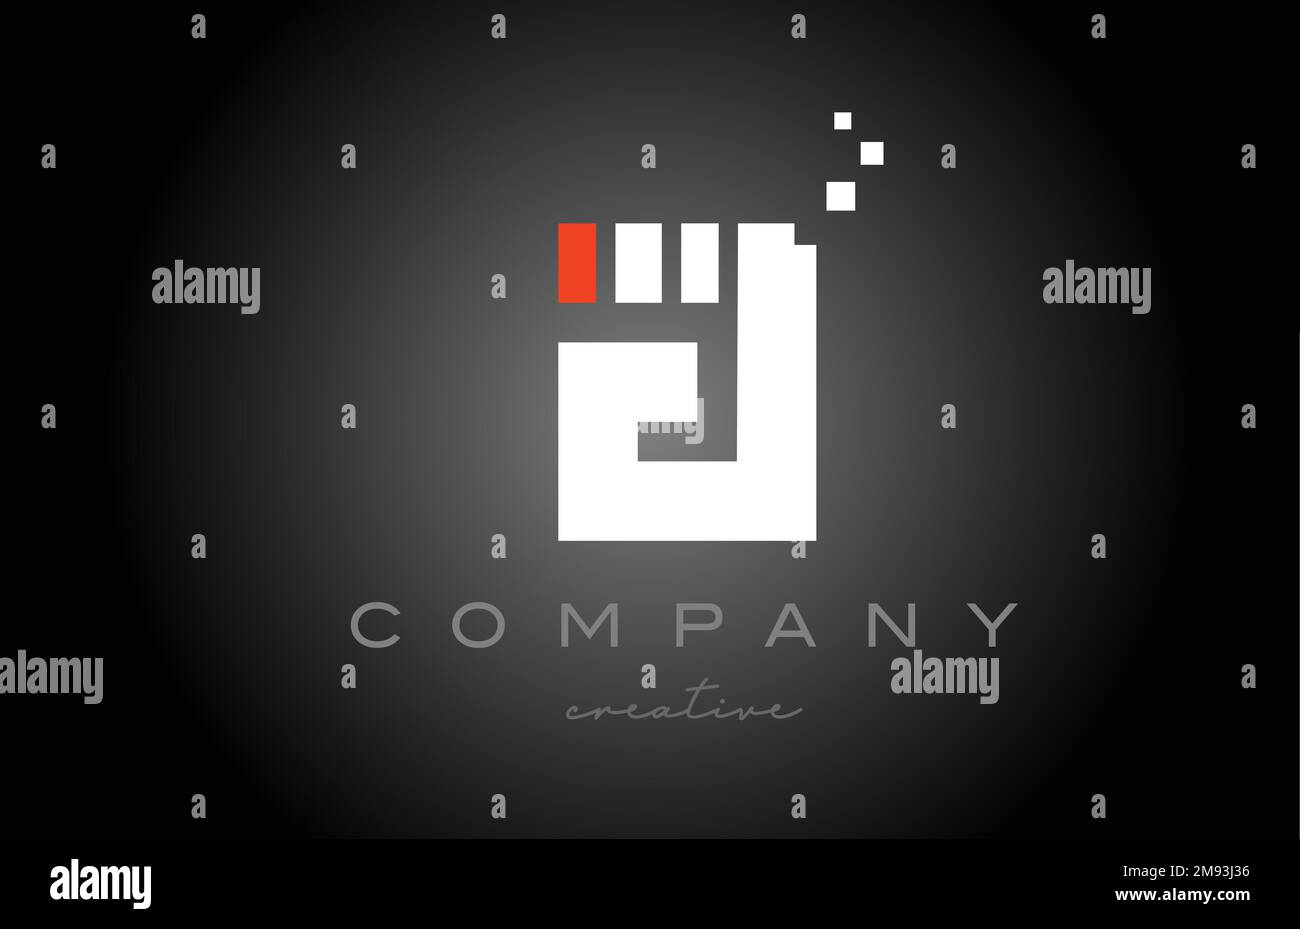 Un disegno dell'icona del logo della lettera dell'alfabeto a punti. Modello di progettazione per aziende o aziende in bianco e nero e rosso Illustrazione Vettoriale